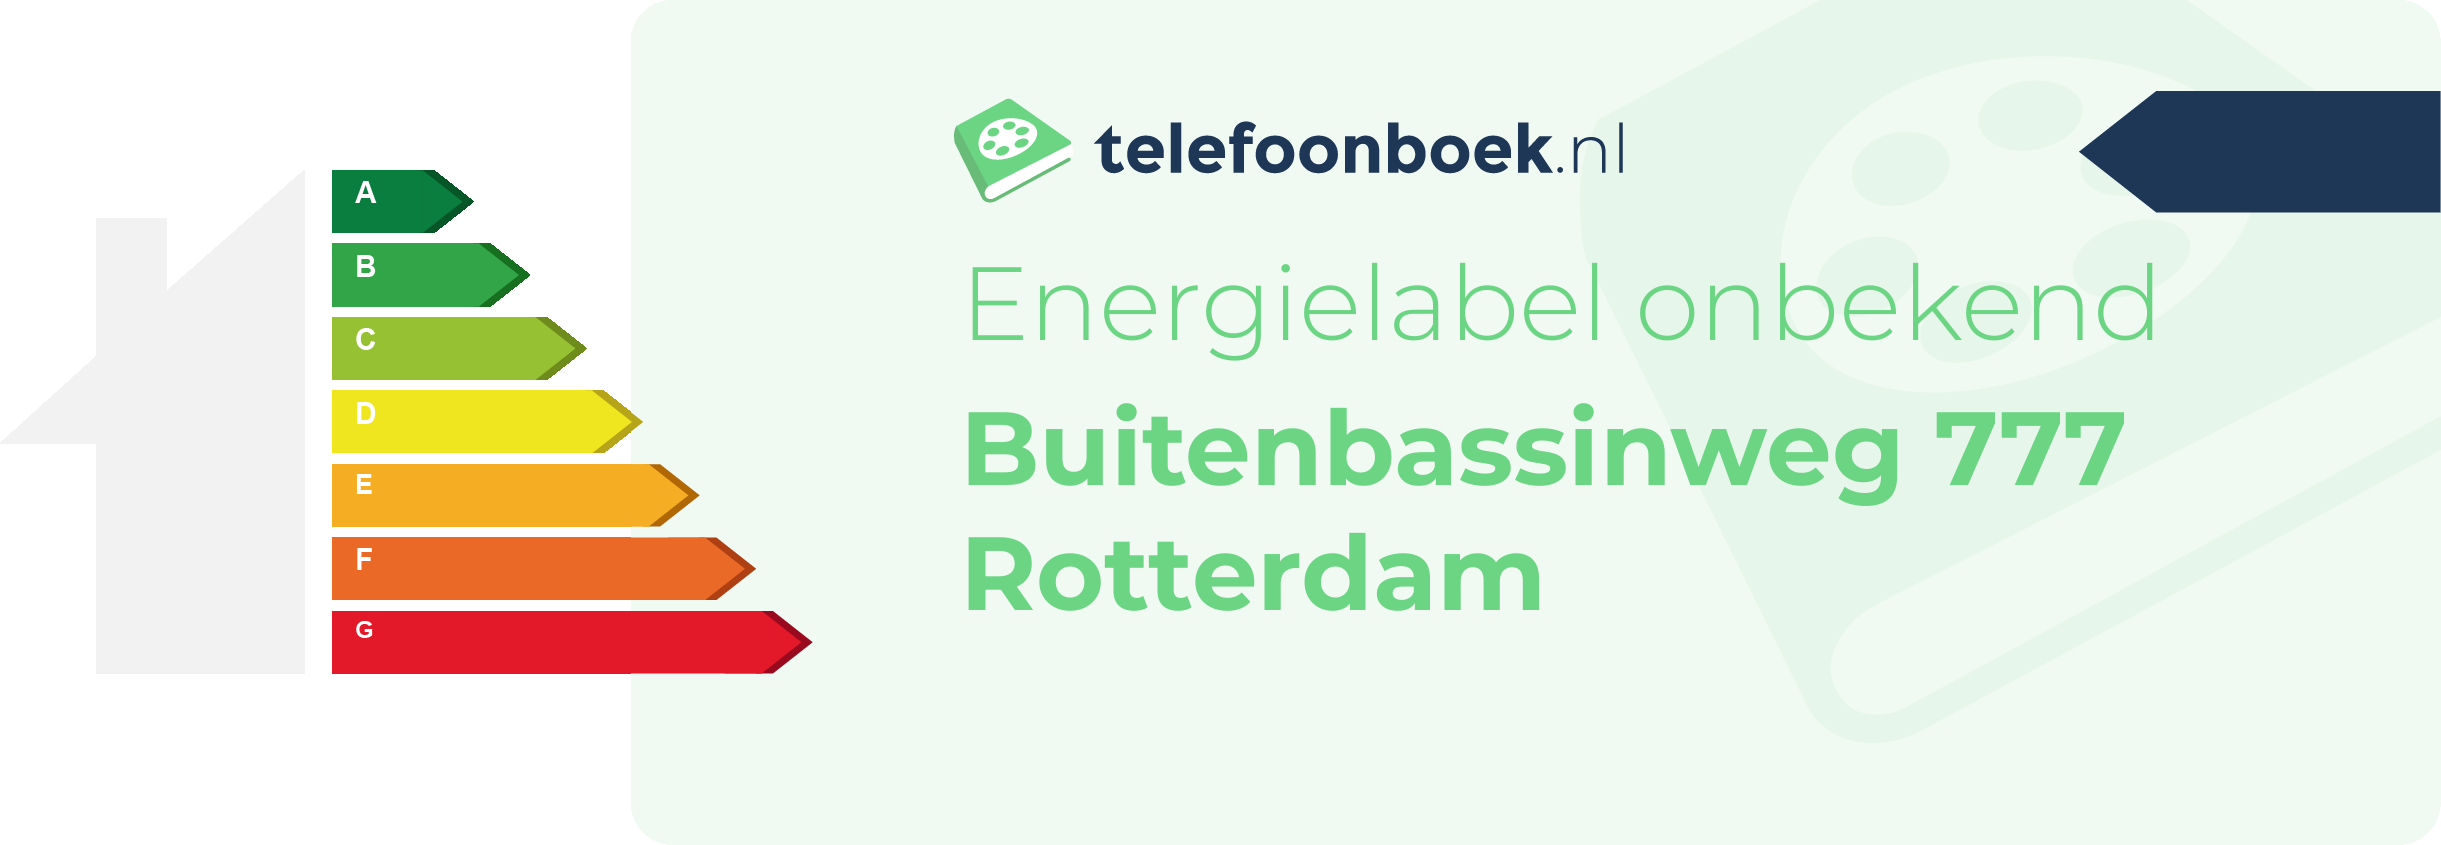 Energielabel Buitenbassinweg 777 Rotterdam